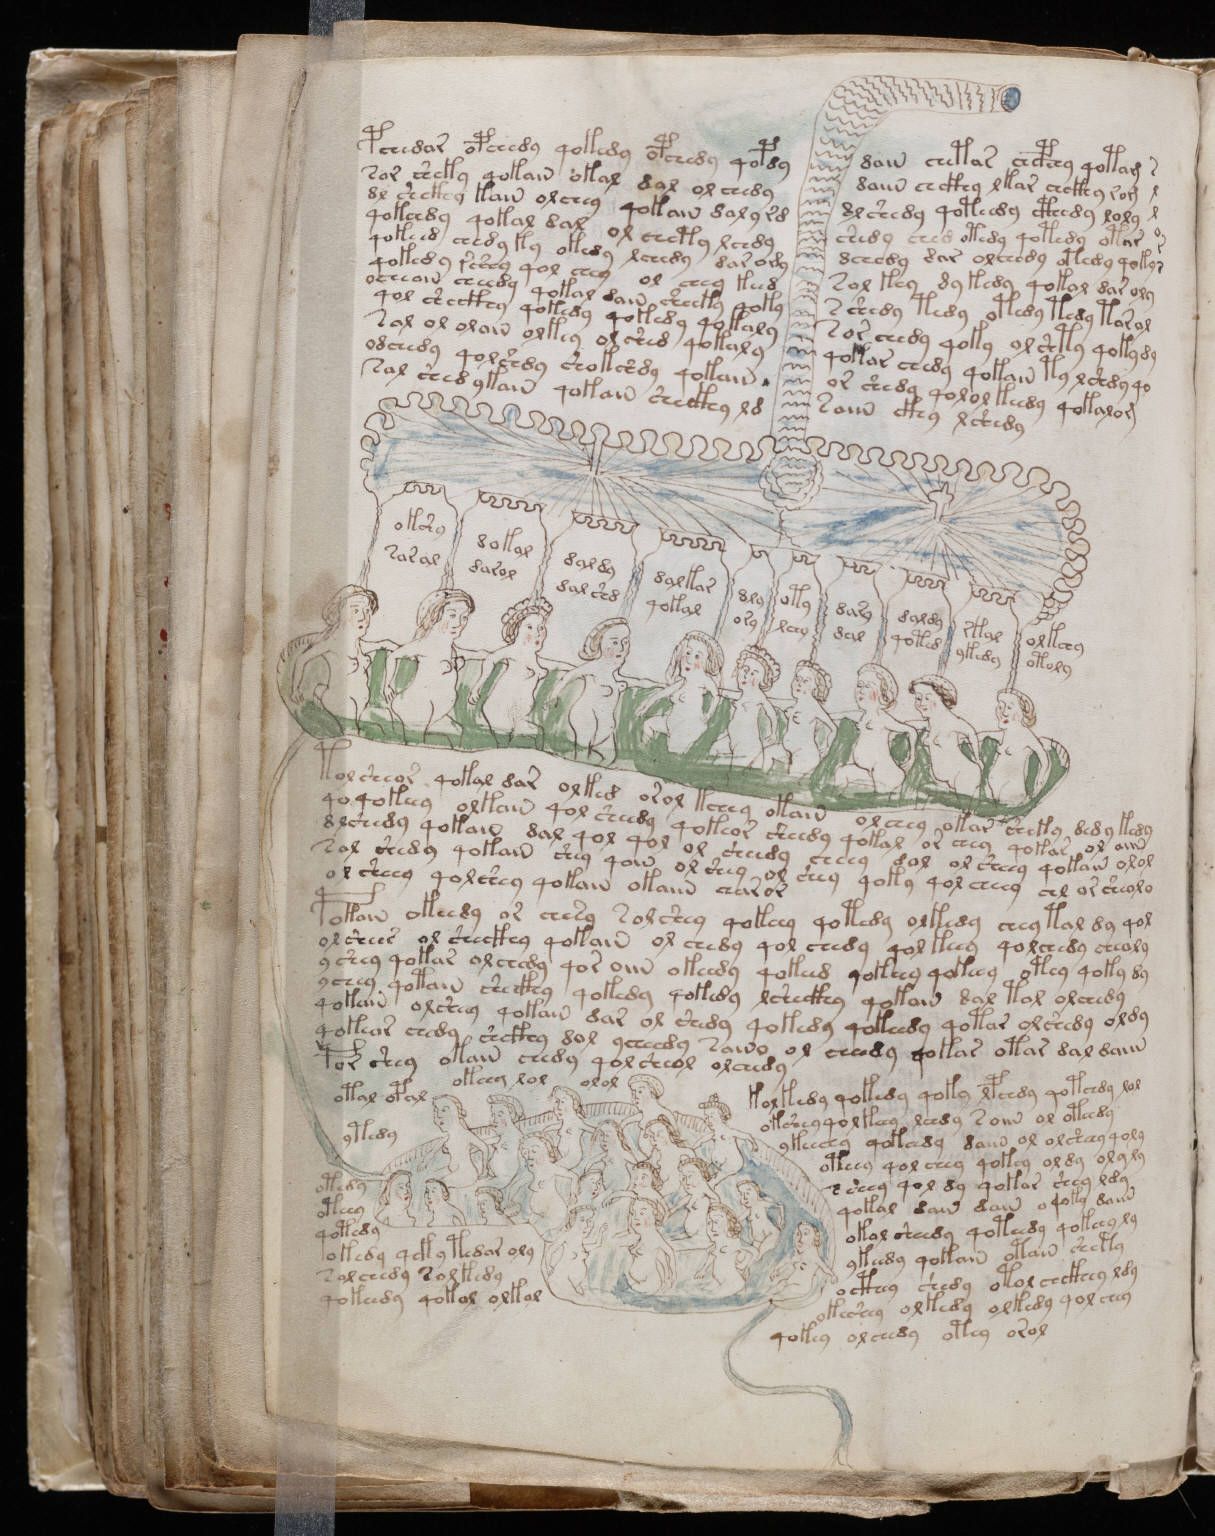 Bản đồ cung hoàng đạo được đưa vào trong cuốn sách cổ